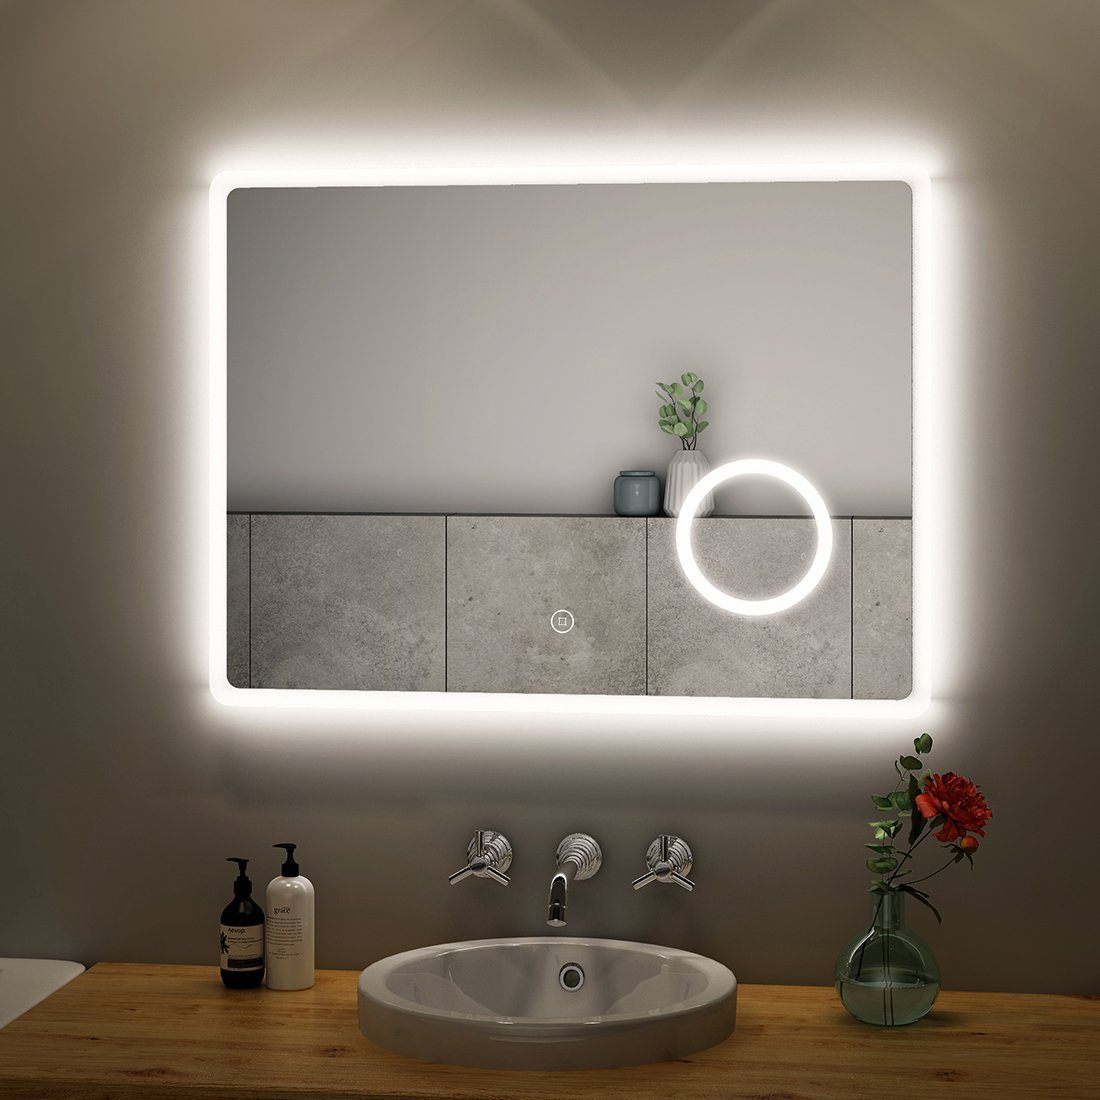 S'AFIELINA Badspiegel Led Badspiegel mit Beleuchtung Wandspiegel, 80x60cm,Kaltweiß 6500K,Touchschalter,3-fach Vergrößerung,IP 54 | Badspiegel